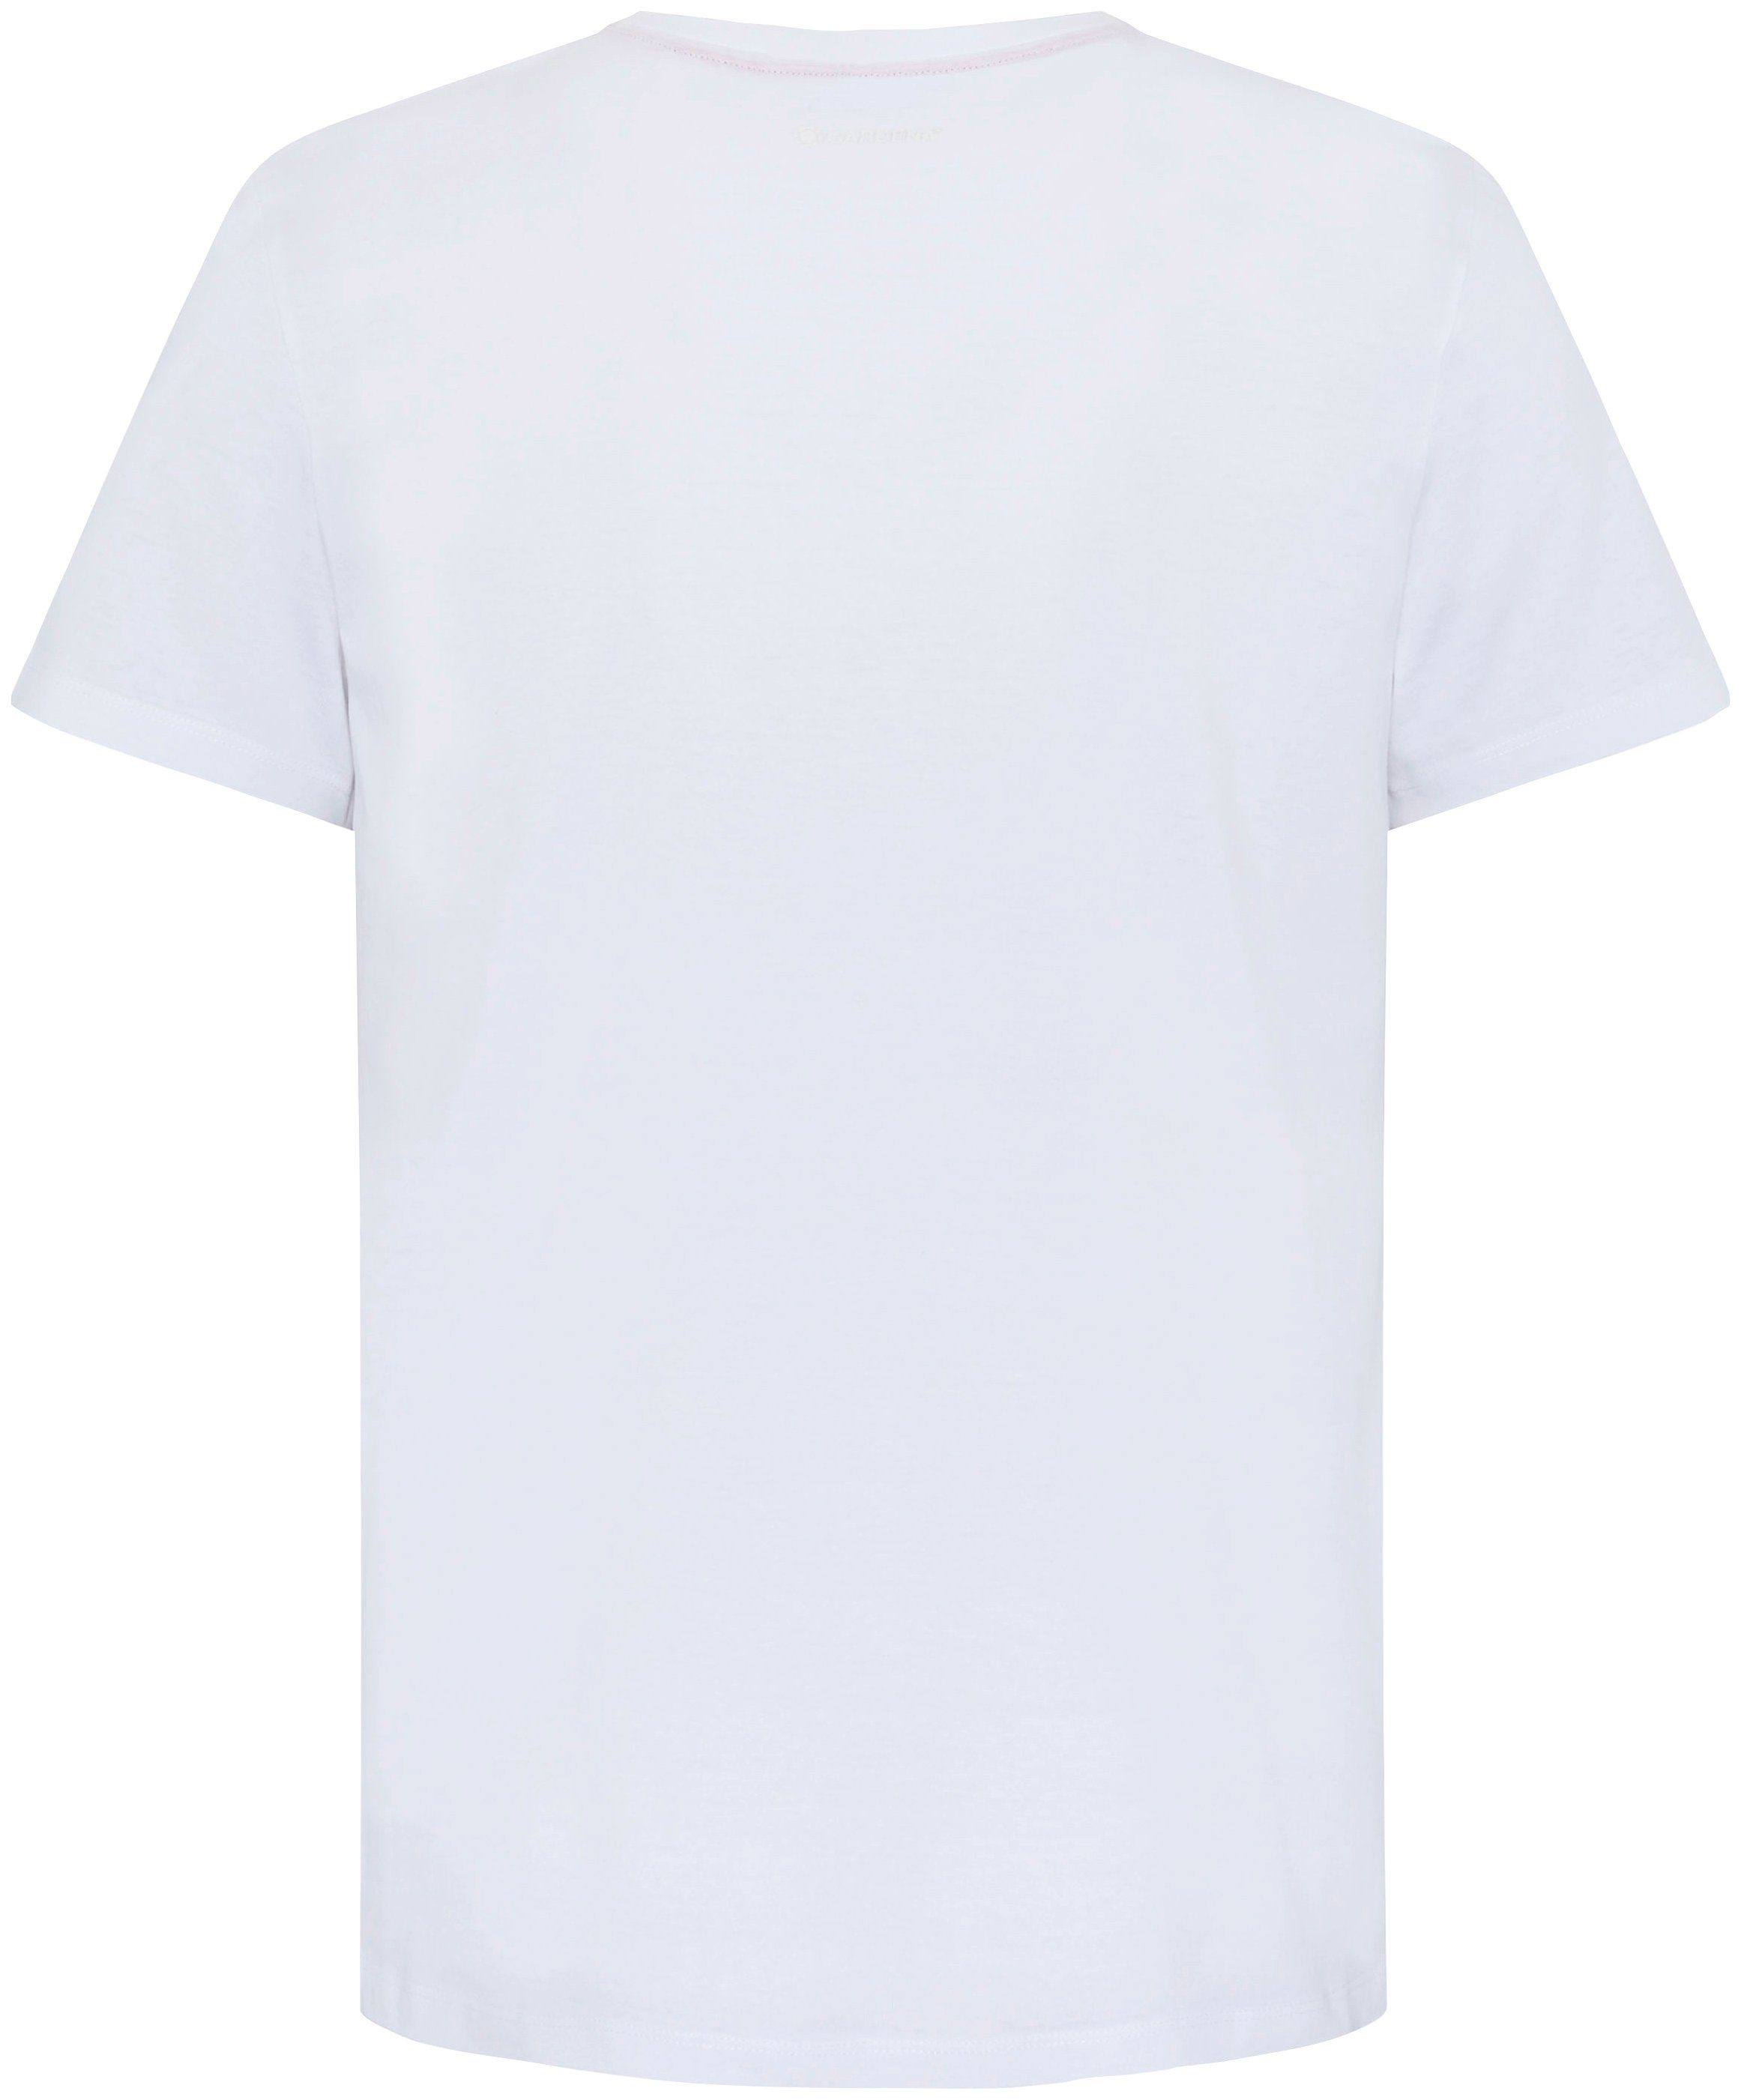 GARDENA T-Shirt Bright White Aufdruck mit